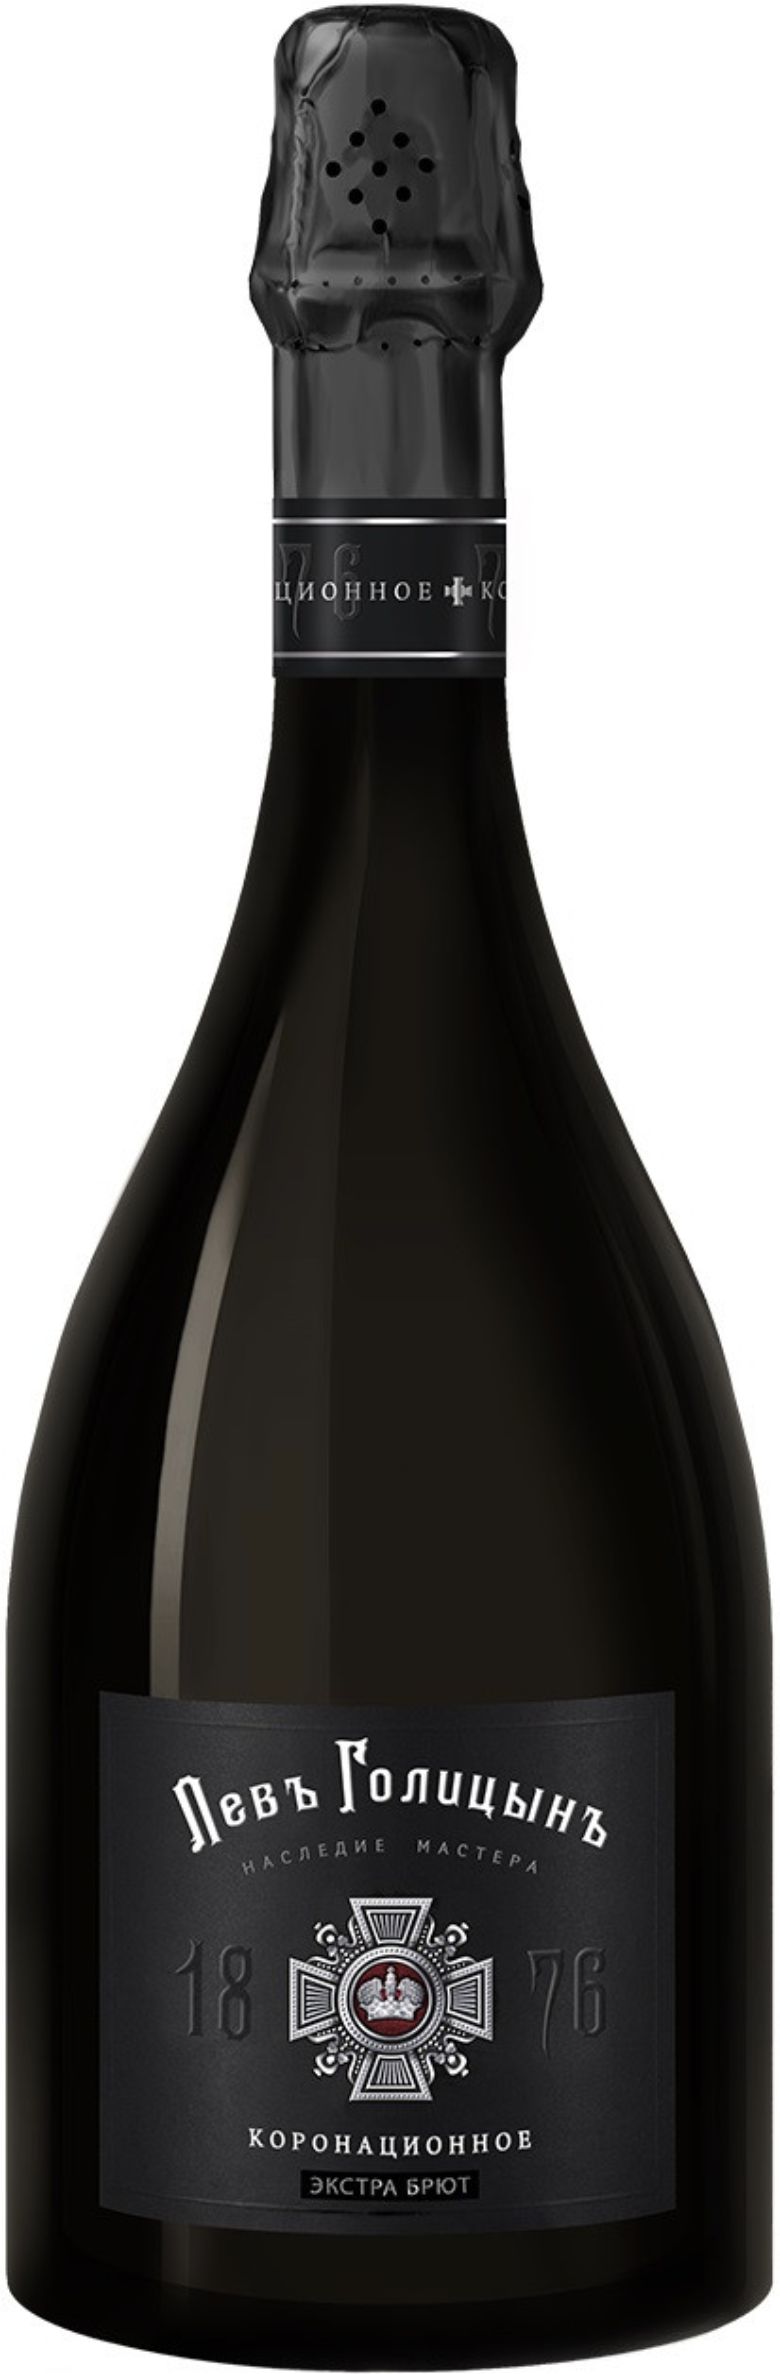 Игристое вино Наследие Мастера "Левъ Голицынъ Коронационное", белое эктра брют, 0.75 л